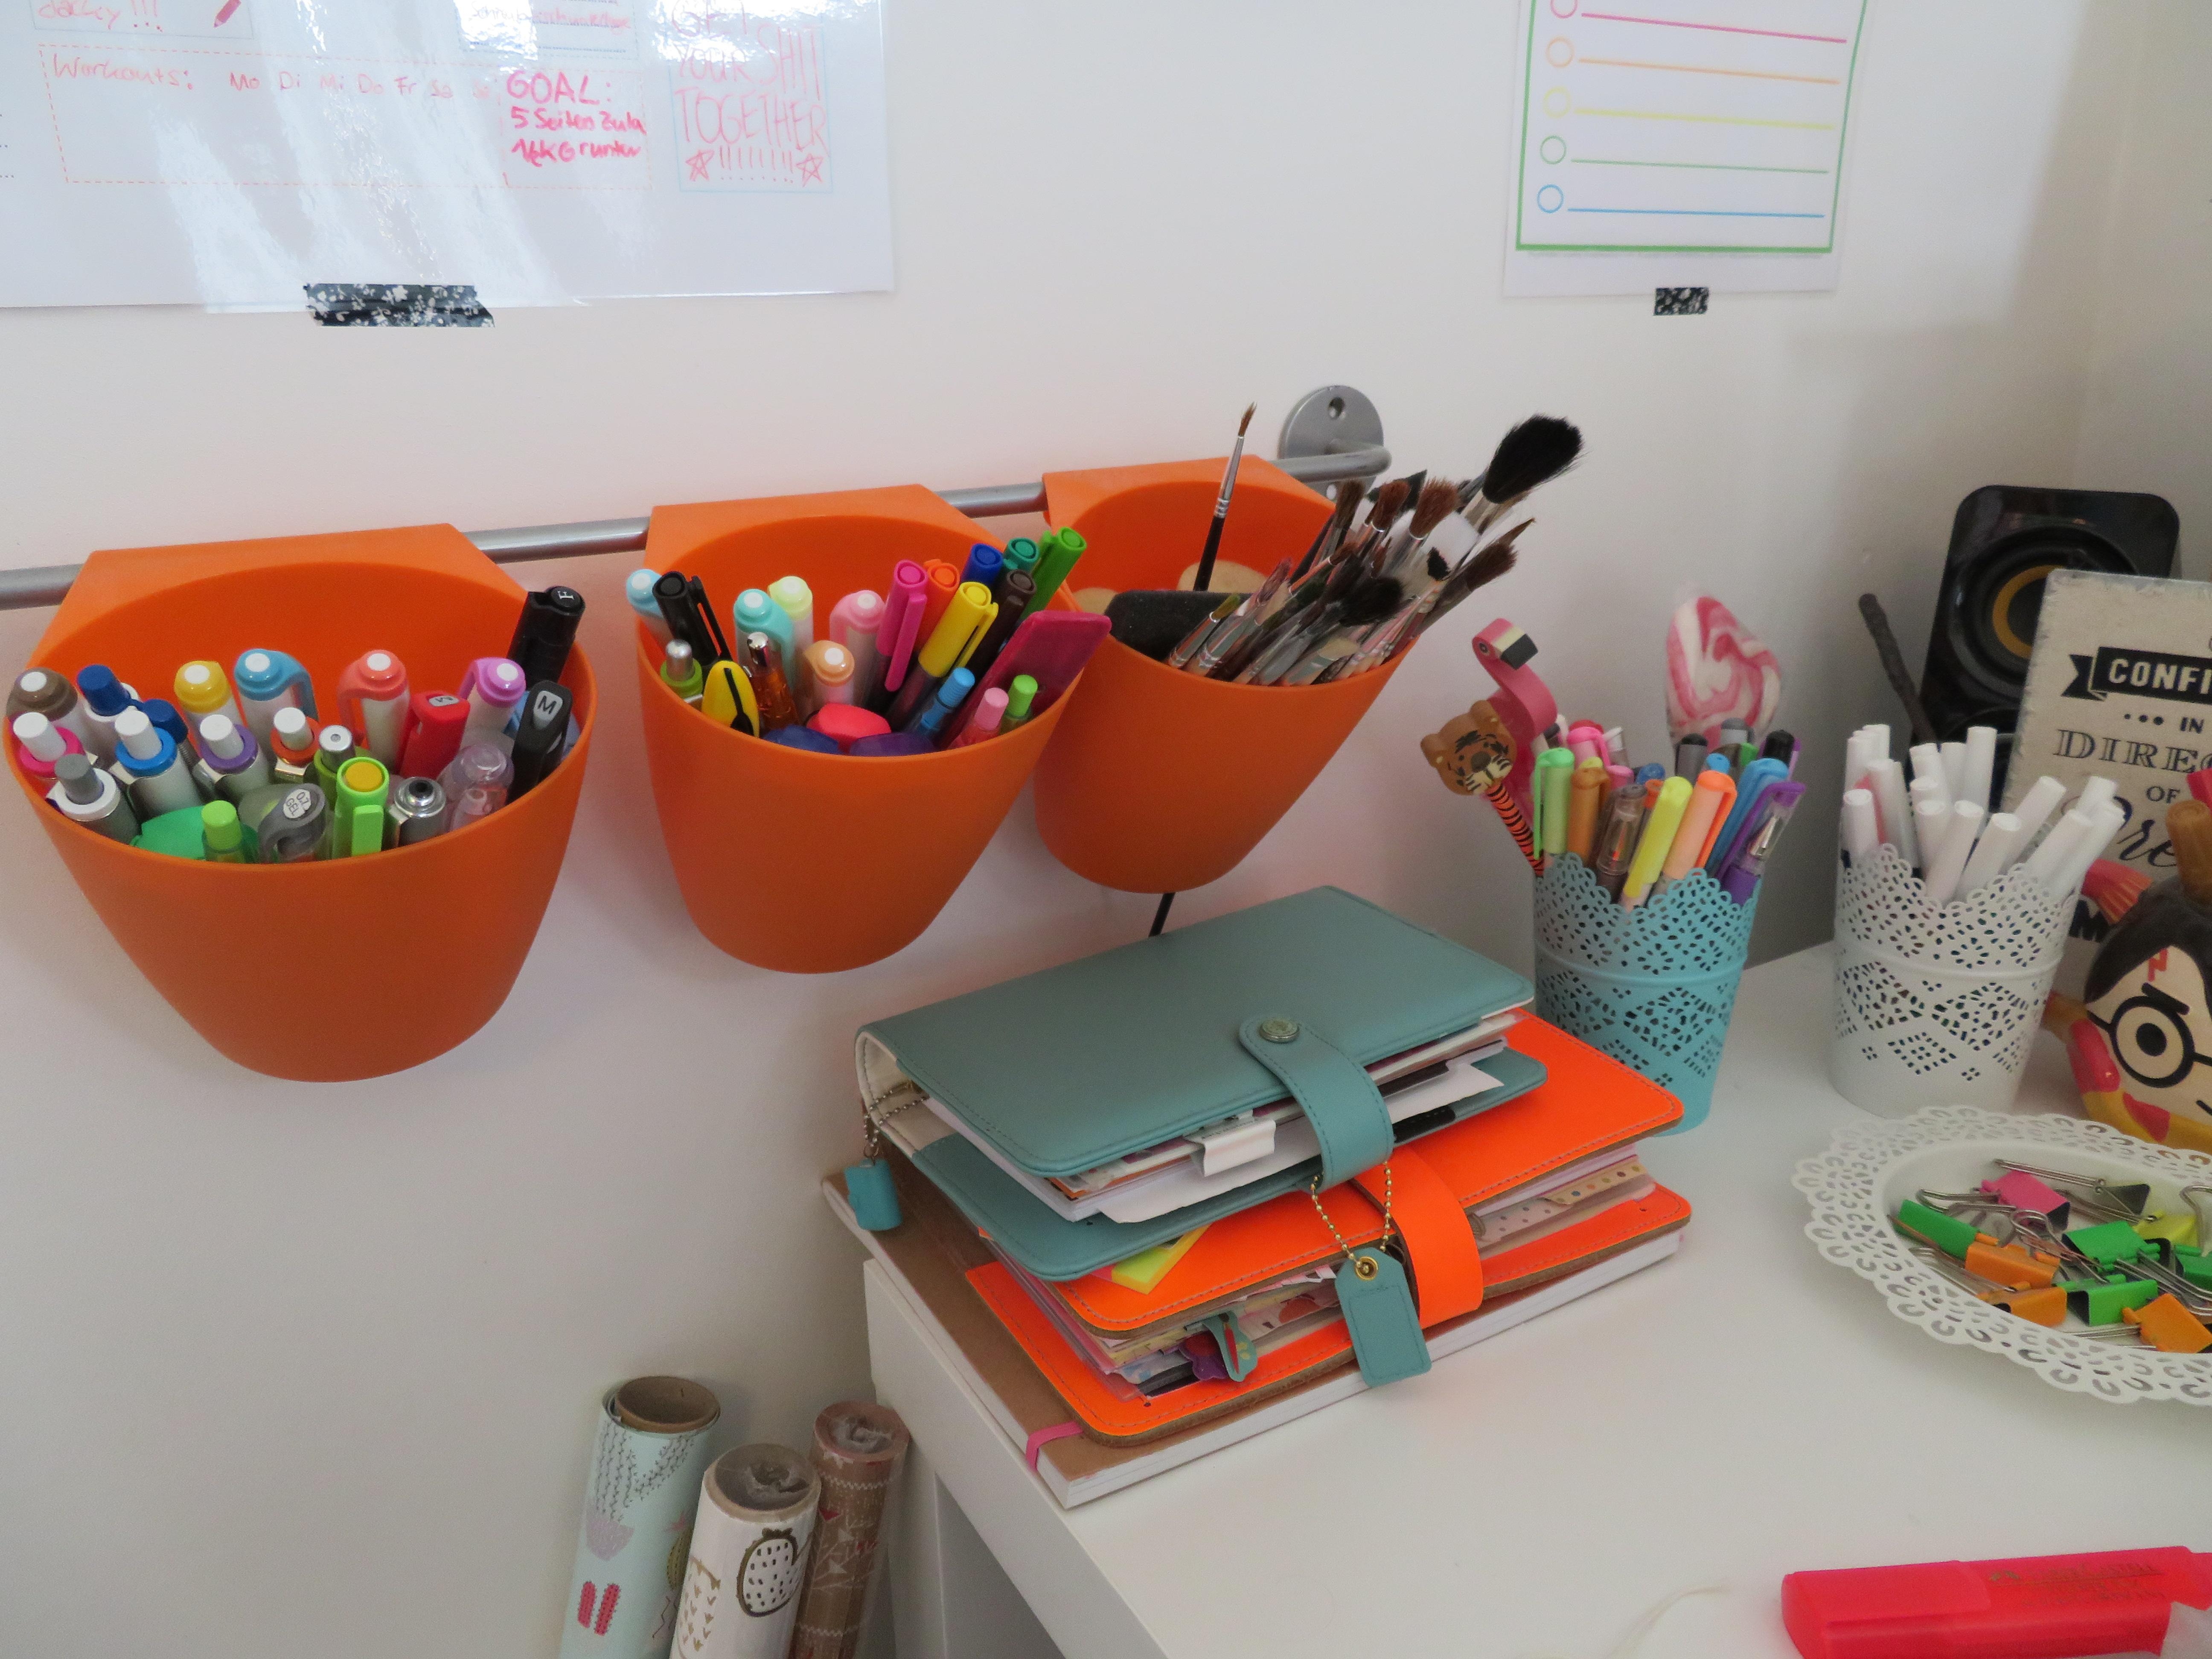 Wenn du auf dem Schreibtisch nicht genug Platz für all deine Stifte hast, musst du eben kreativ werden :)
#myflyingspace